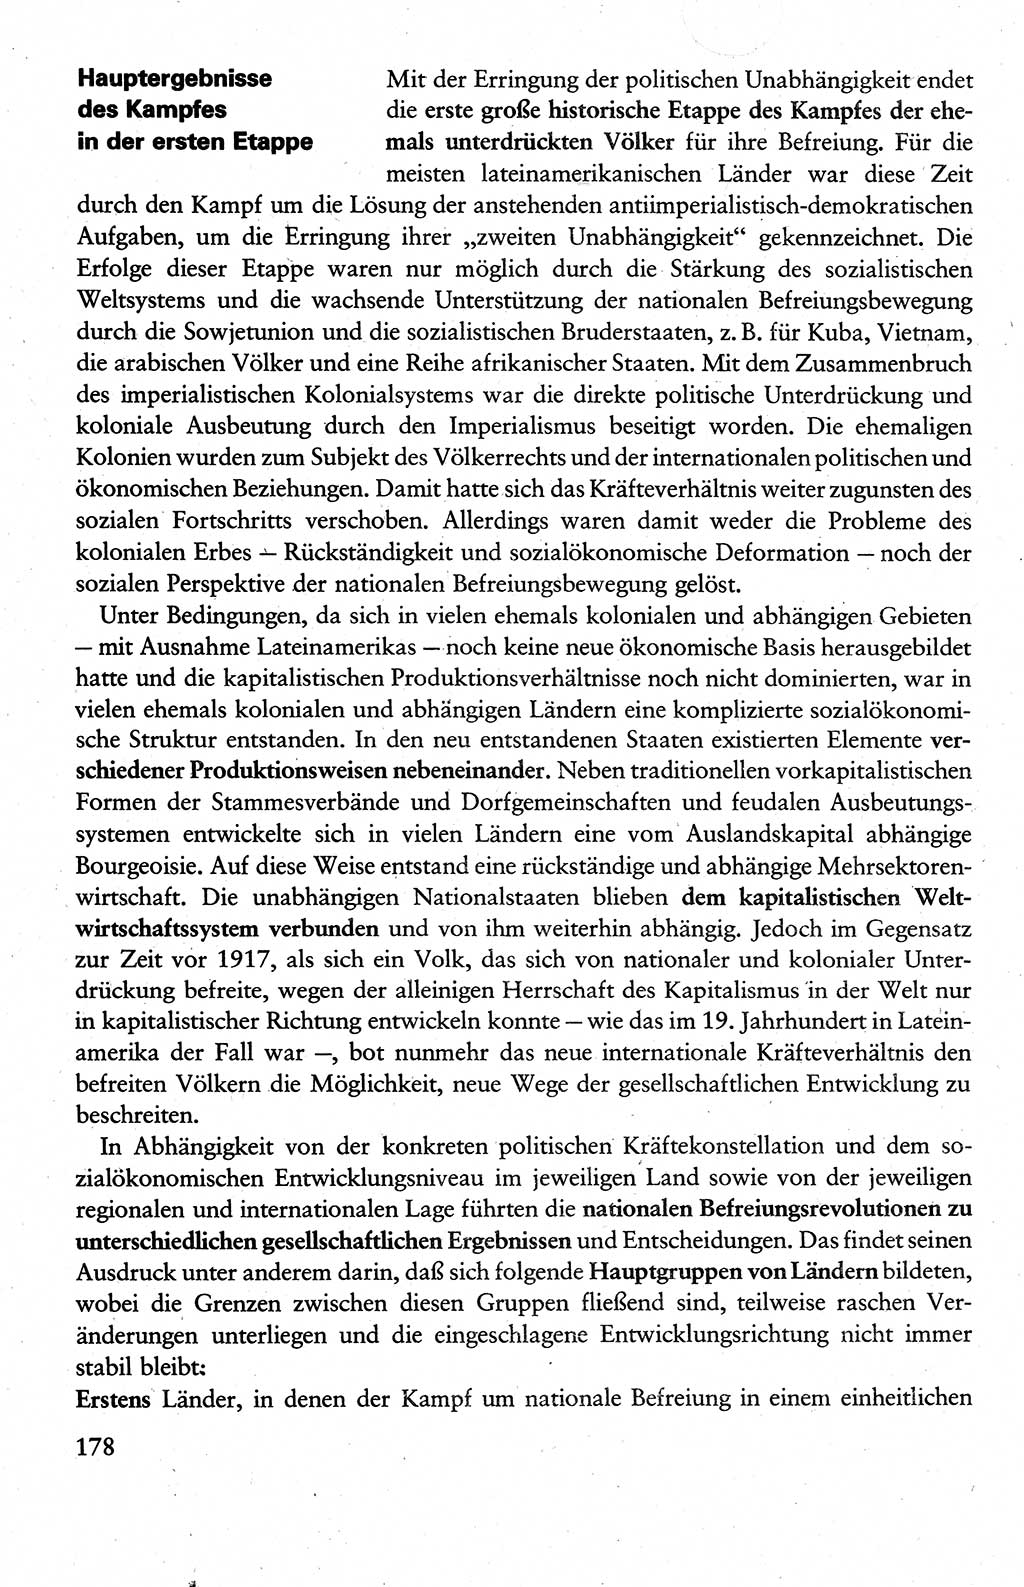 Wissenschaftlicher Kommunismus [Deutsche Demokratische Republik (DDR)], Lehrbuch für das marxistisch-leninistische Grundlagenstudium 1983, Seite 178 (Wiss. Komm. DDR Lb. 1983, S. 178)